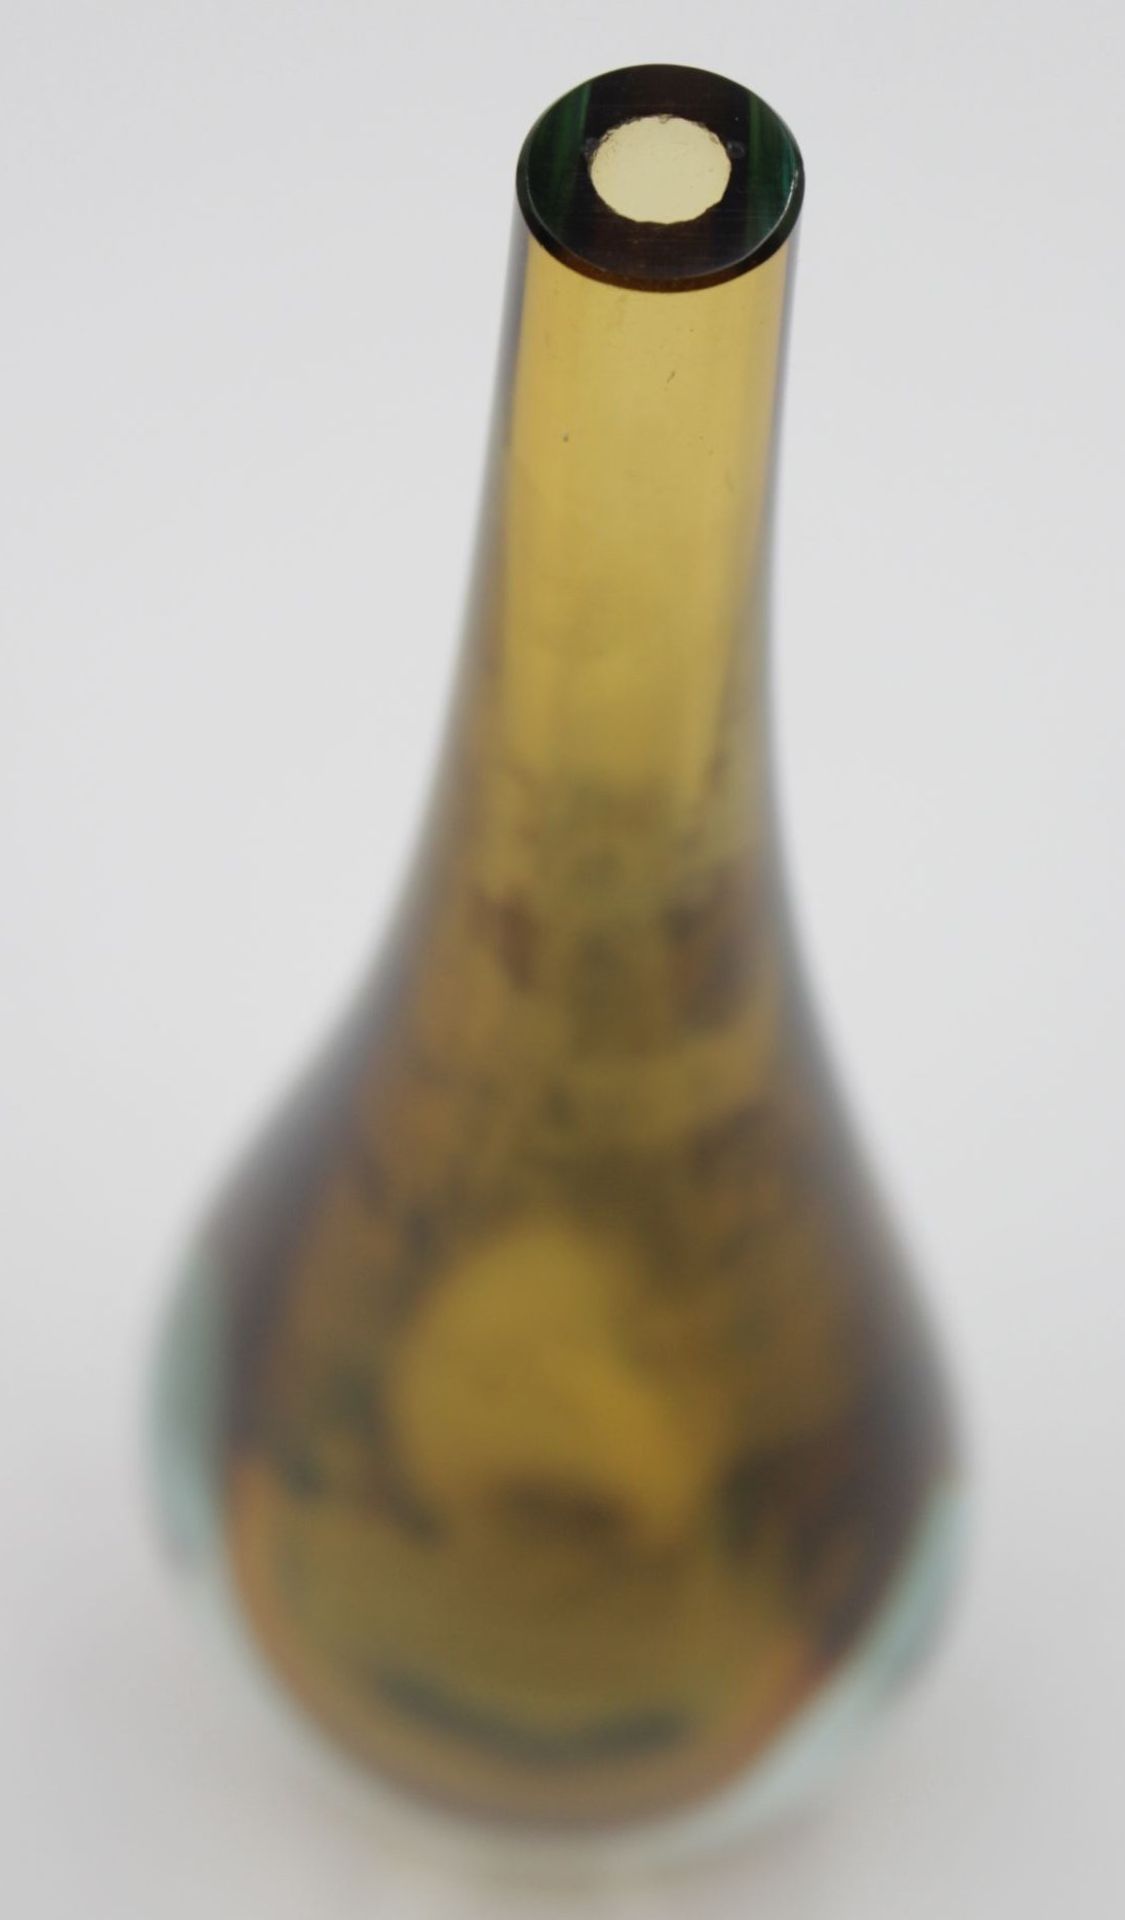 Zweifarbige Flaschenvase von Murano , kleinere Chips an der Öffnung , H-25,8 cm - Bild 2 aus 4